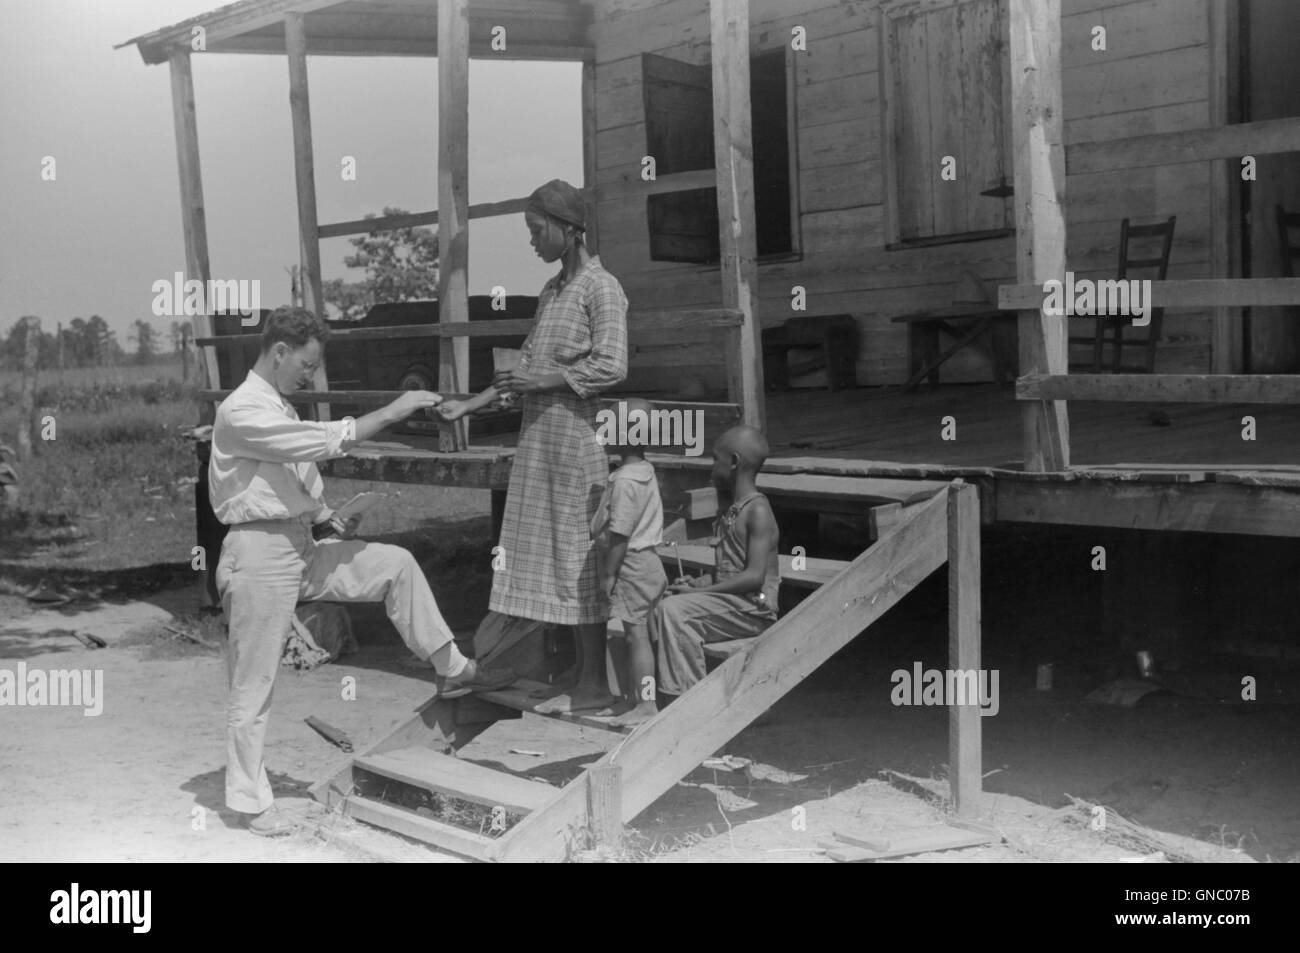 Médecin de santé publique locataire donnant la médecine familiale pour le paludisme, près de Columbia, Caroline du Sud, USA, Marion Post Wolcott pour Farm Security Administration, juin 1939 Banque D'Images